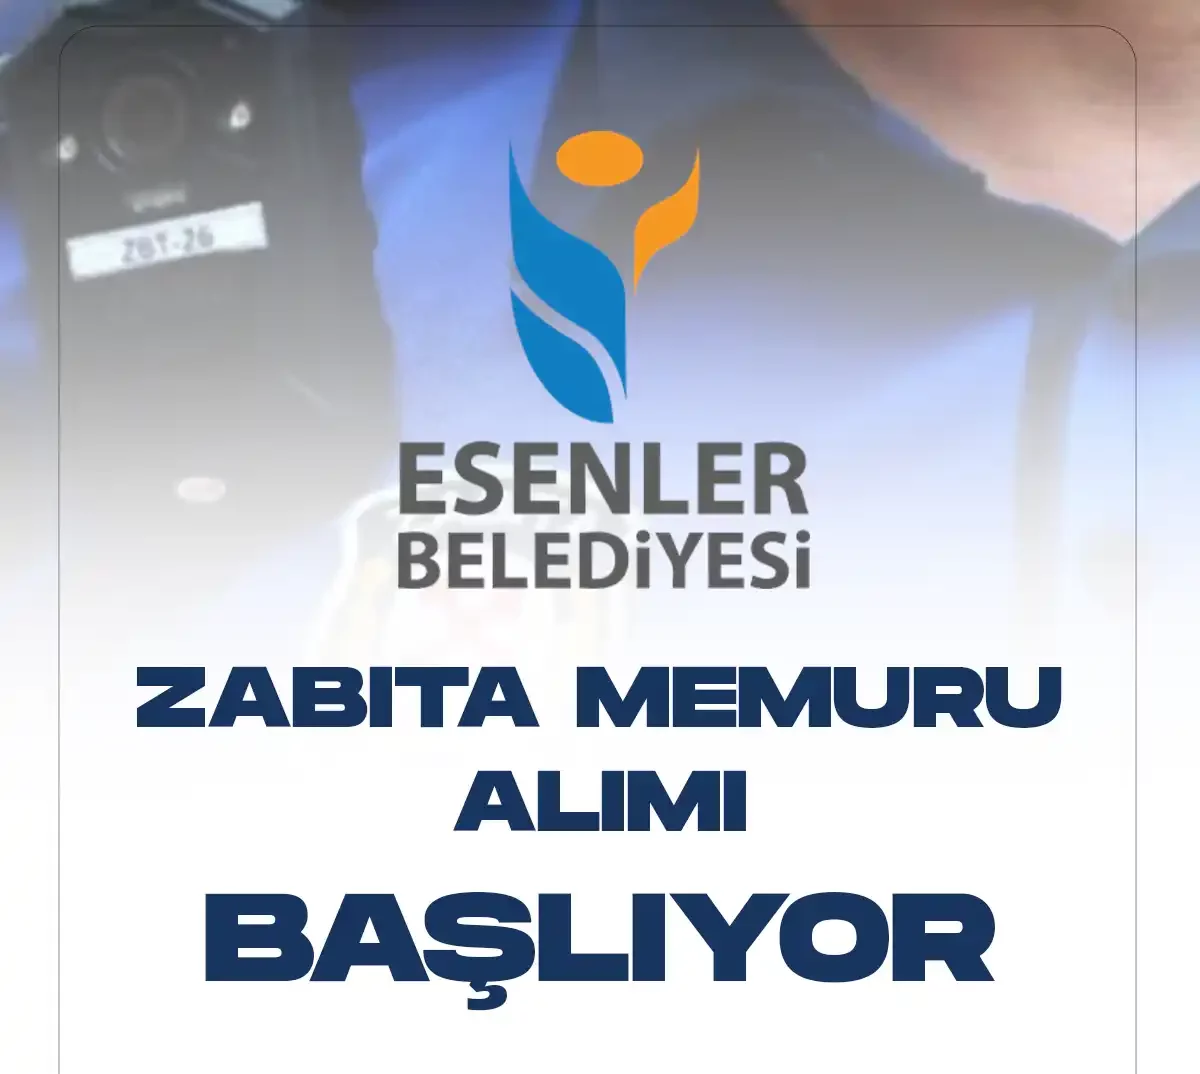 İstanbul Esenler Belediyesi KPSS en az 70 puan şartıyla kadın-erkek zabıta memuru alımları için başvuru işlemleri başlıyor.